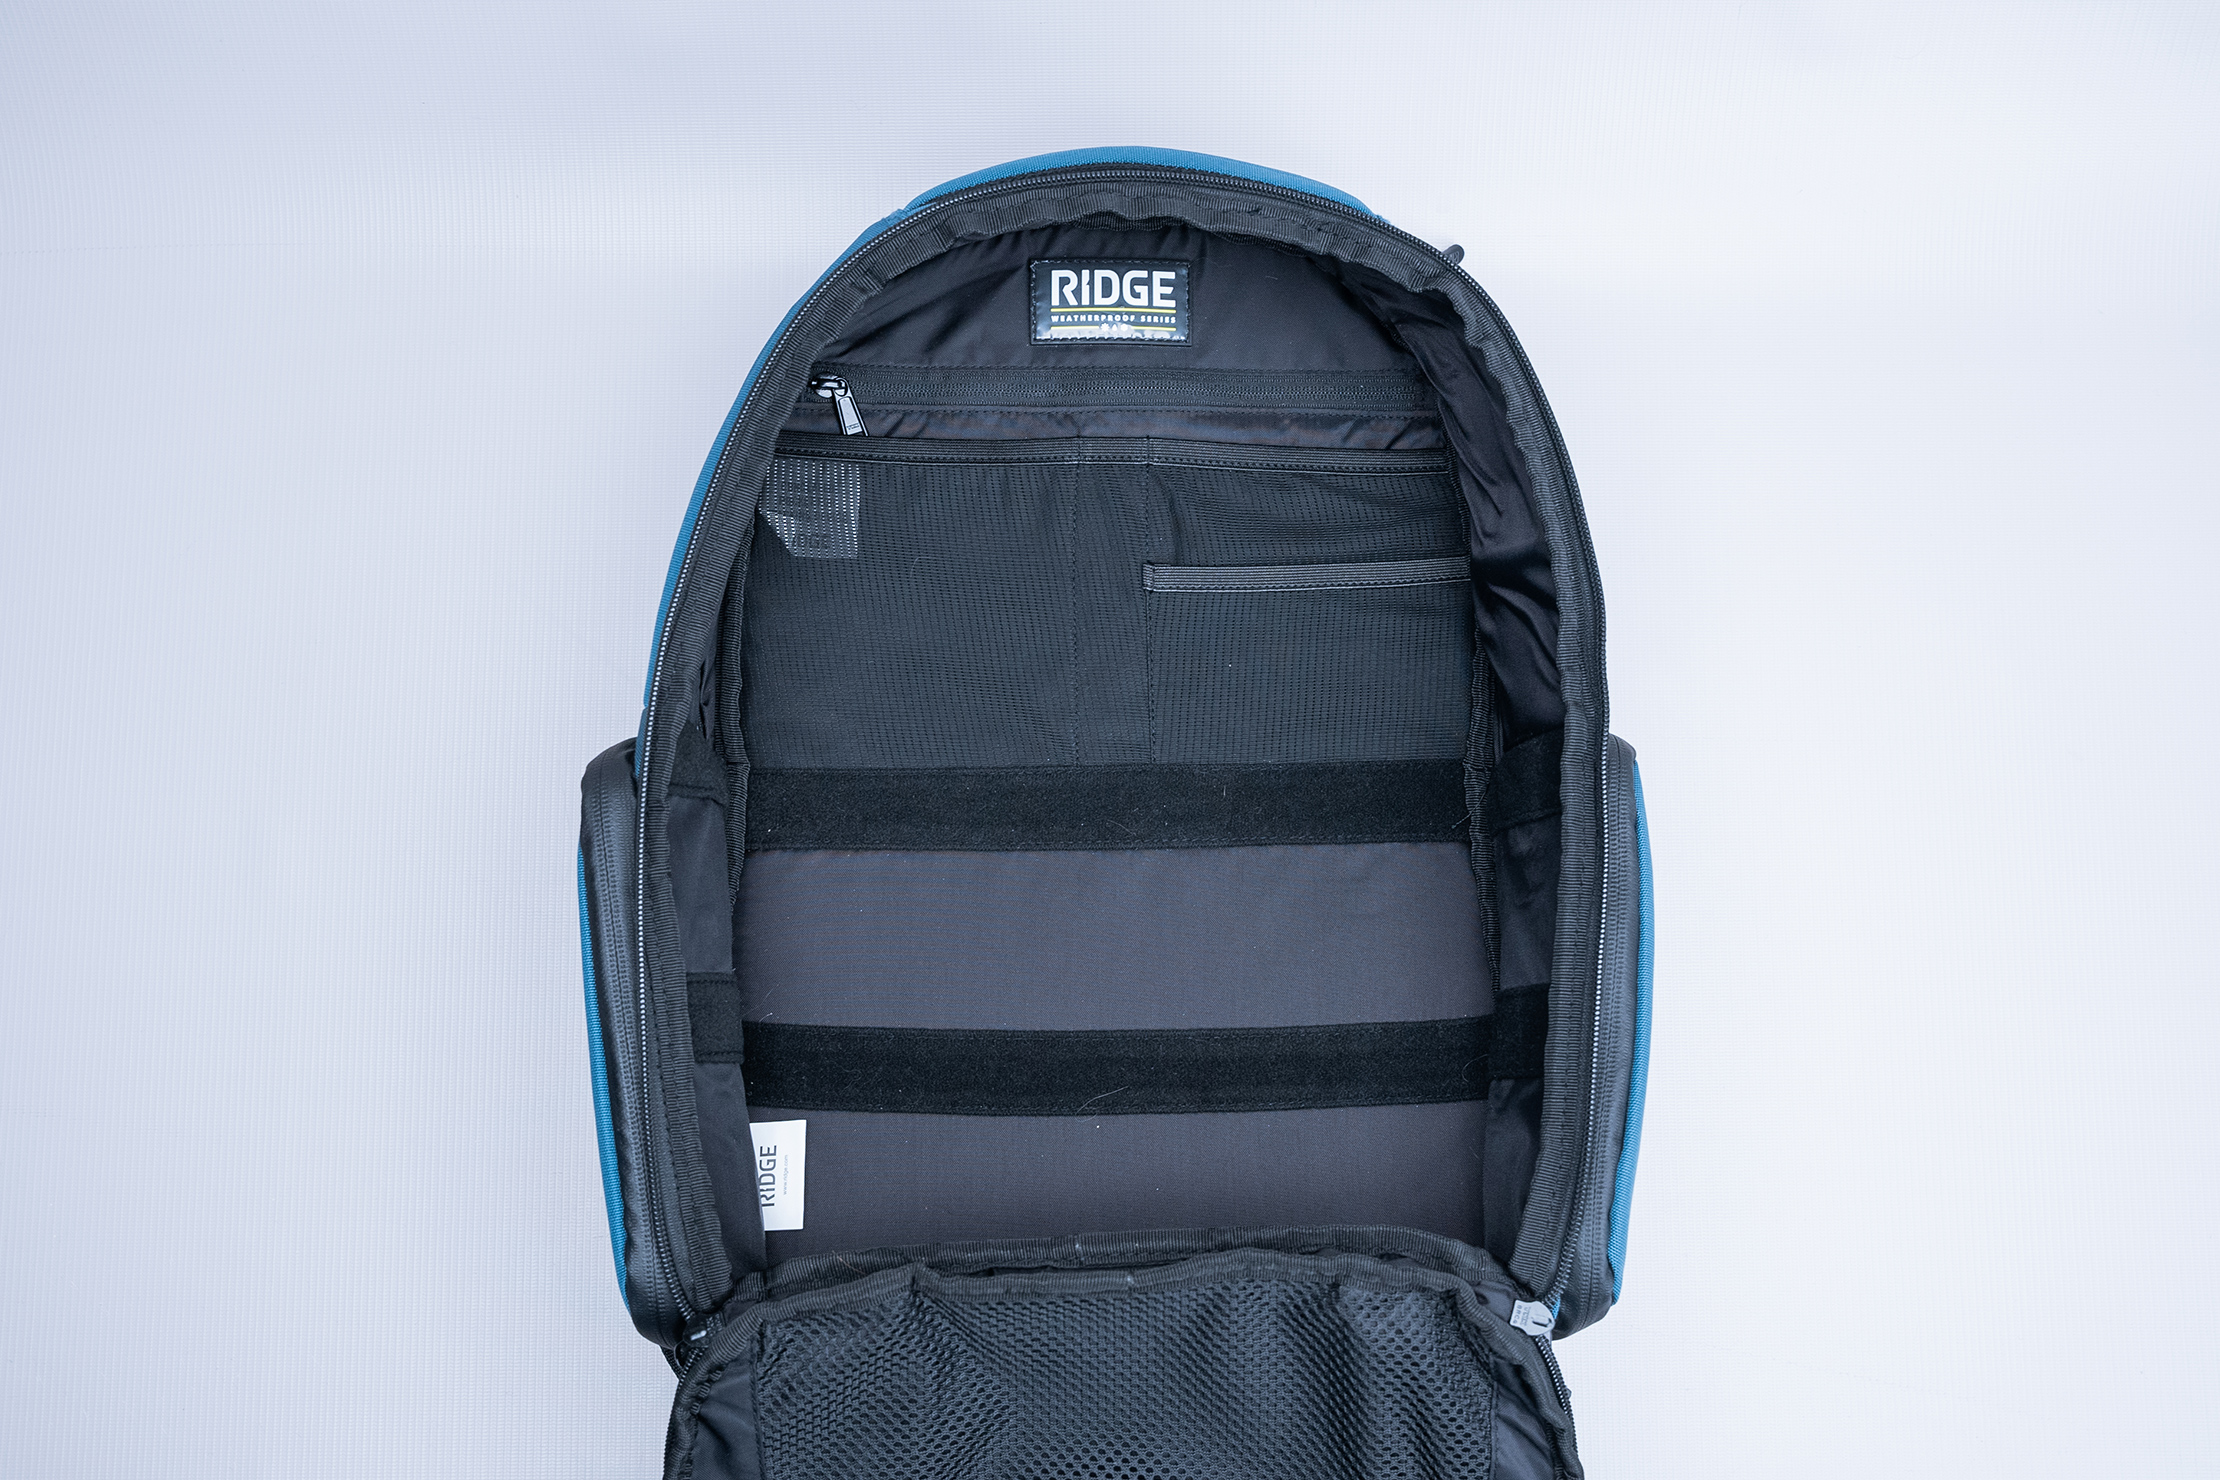 The Ridge Commuter Backpack V2 Interior